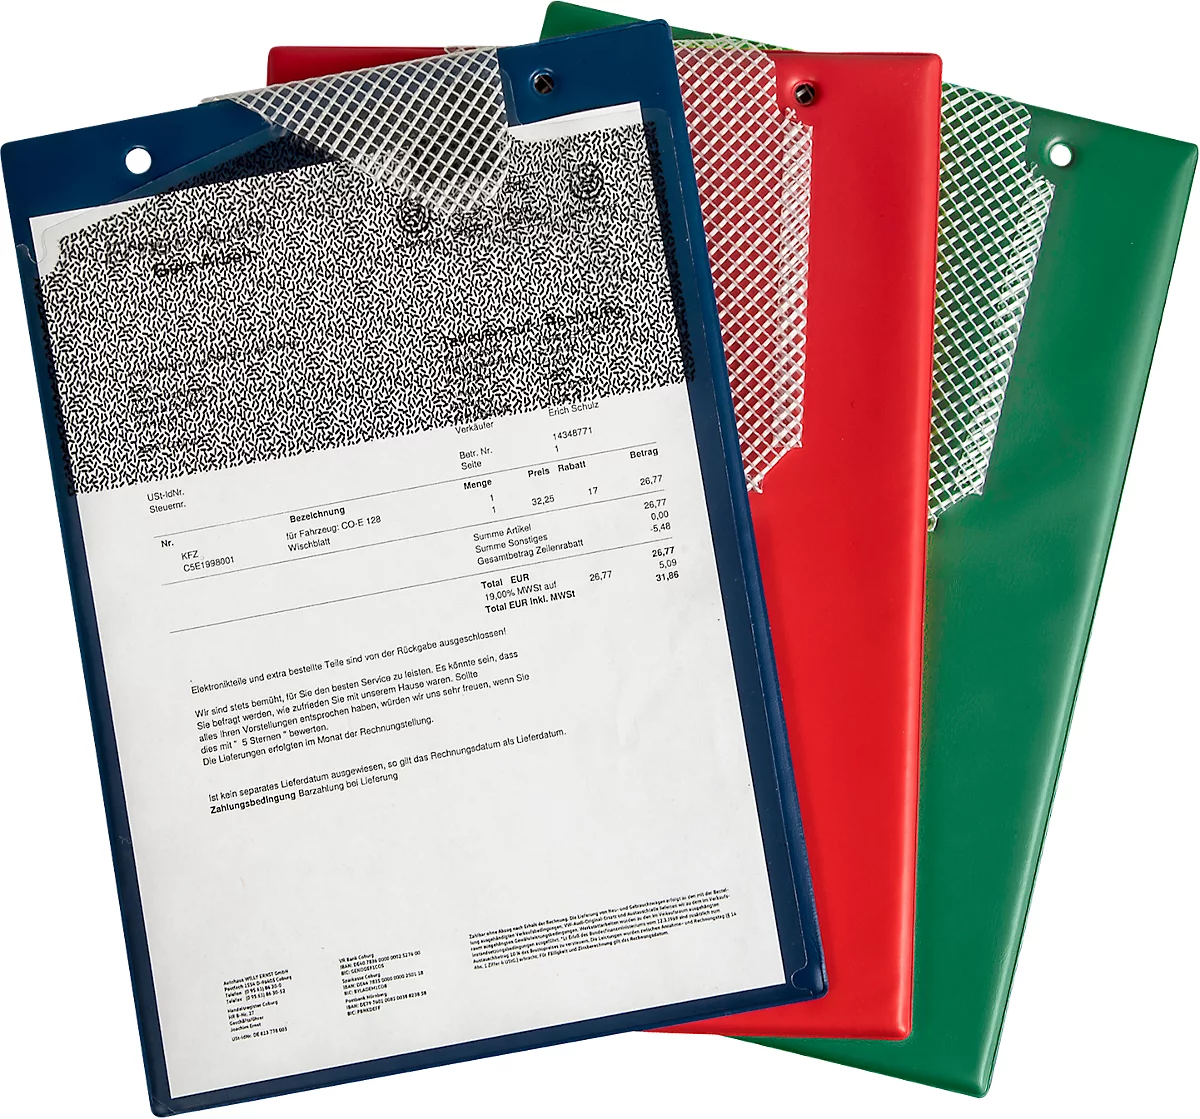 EICHNER Auftragstasche Secure, für DIN A4 Dokumente, 10 Stück, inkl. Schlüsselfach, B 230 x T 5 x H 330 mm, diverse Farben